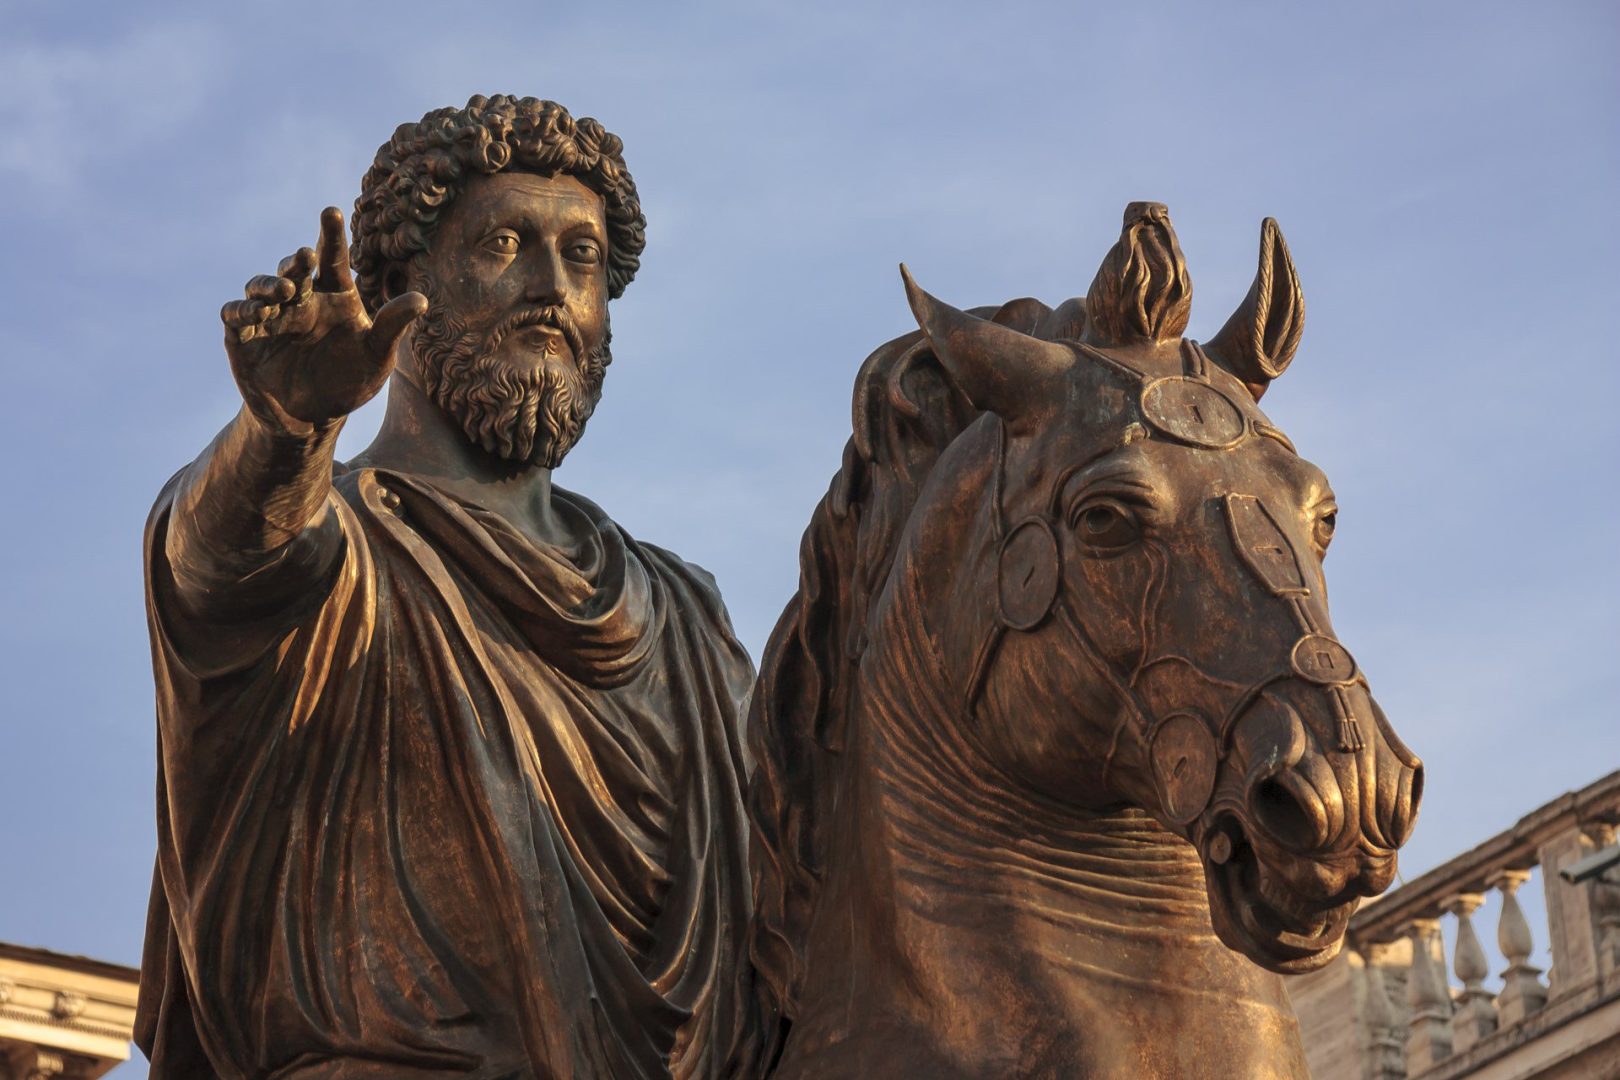 Roman Emperor Marcus Aurelius